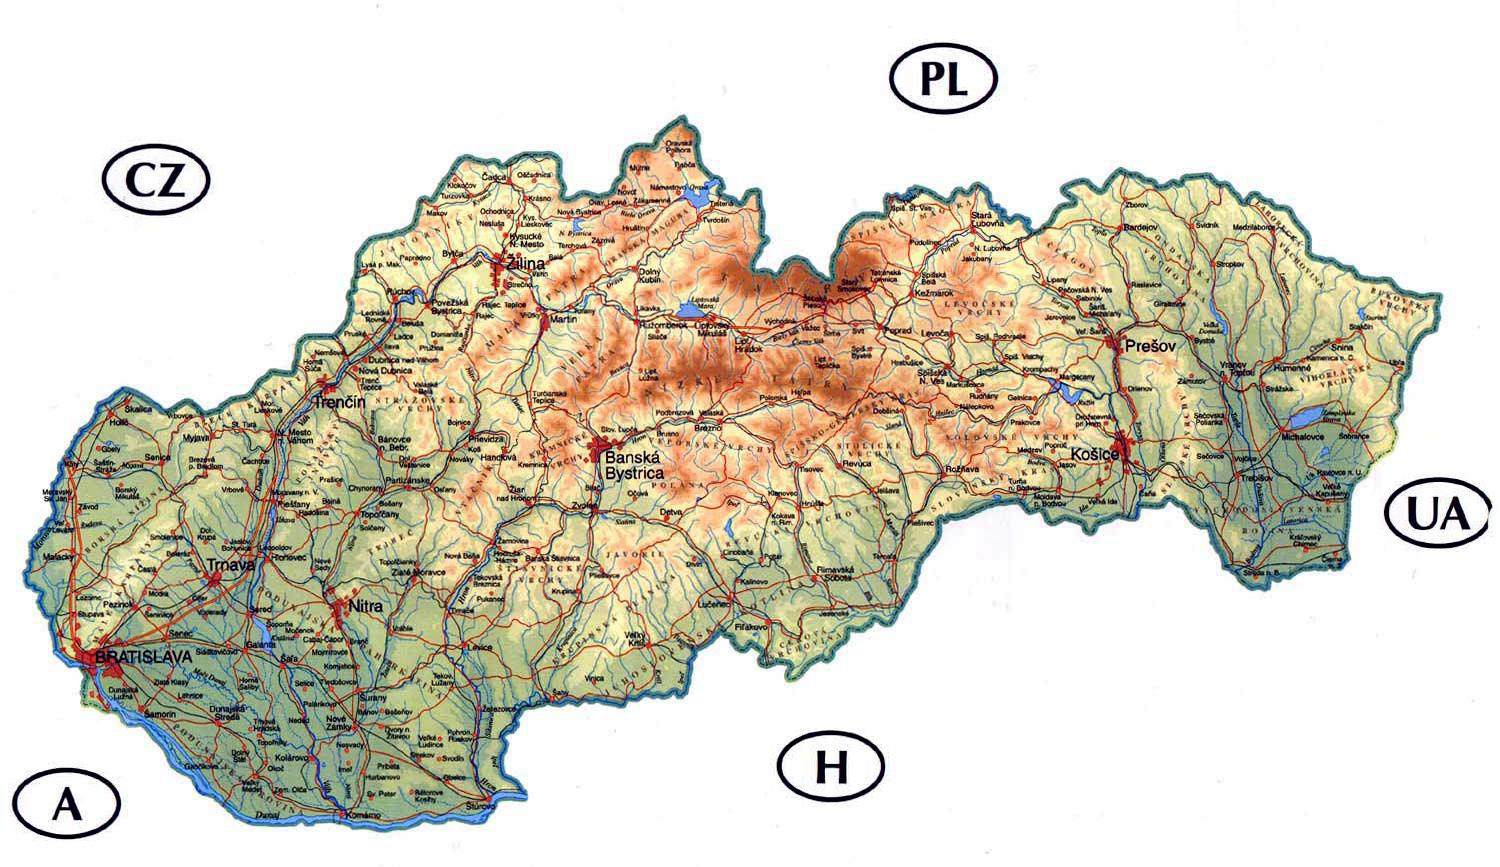 szlovákia térkép magyarul